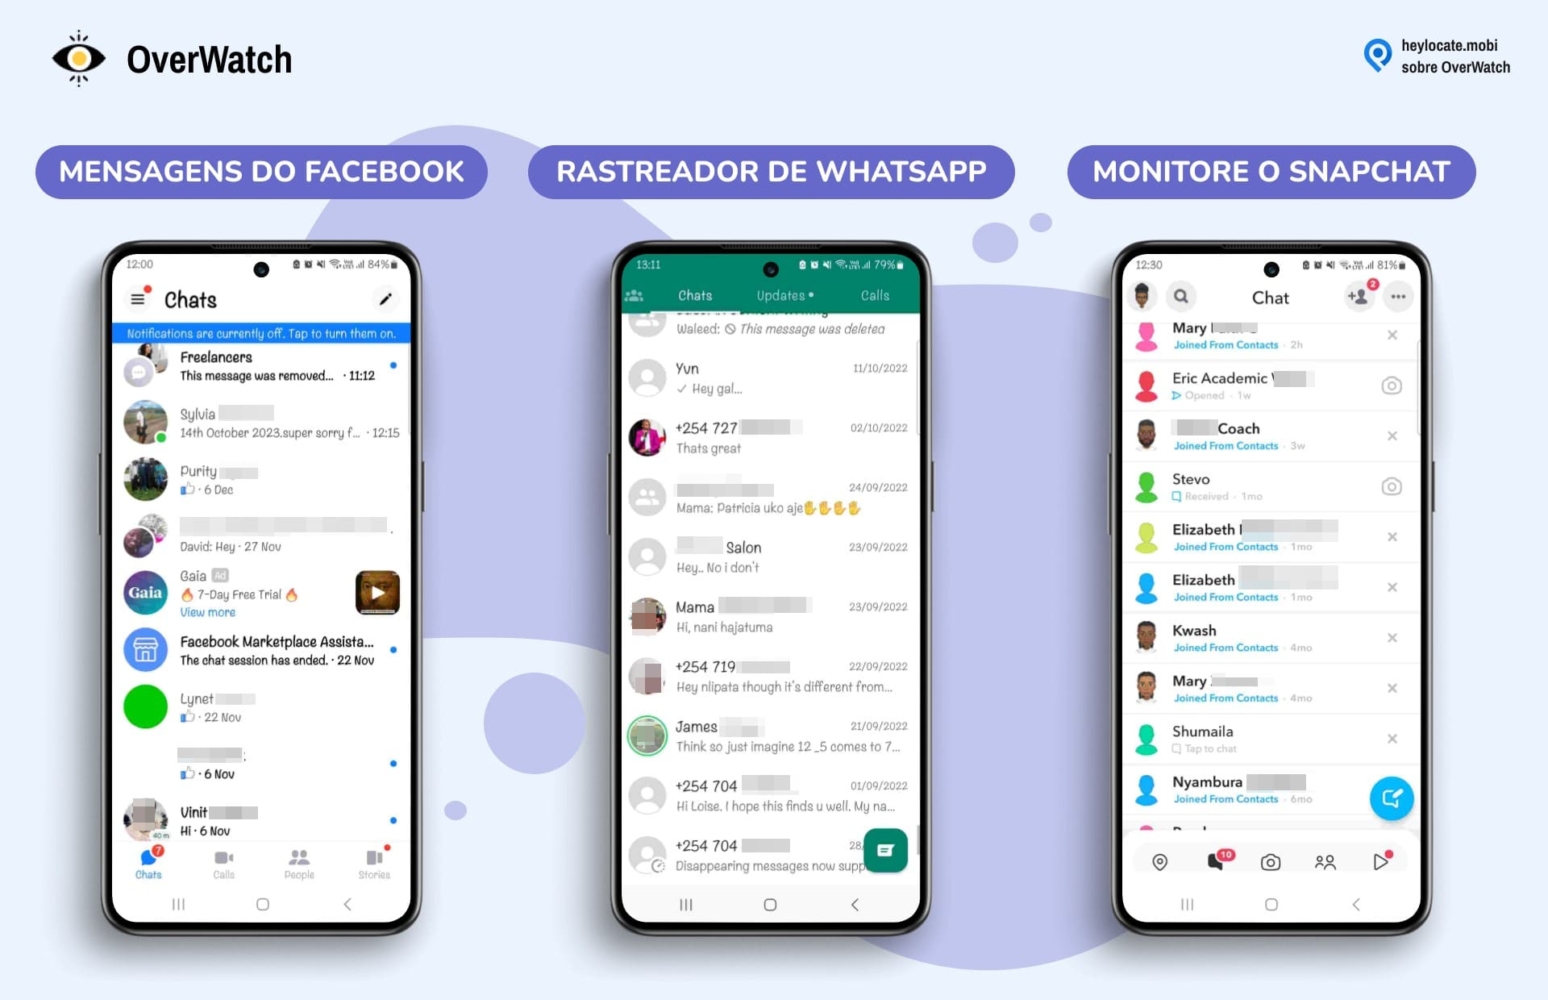 Os recursos de rastreamento de mídia social da Overwatch, mostrando interfaces para monitorar mensagens do Facebook, WhatsApp e atividades do Snapchat.